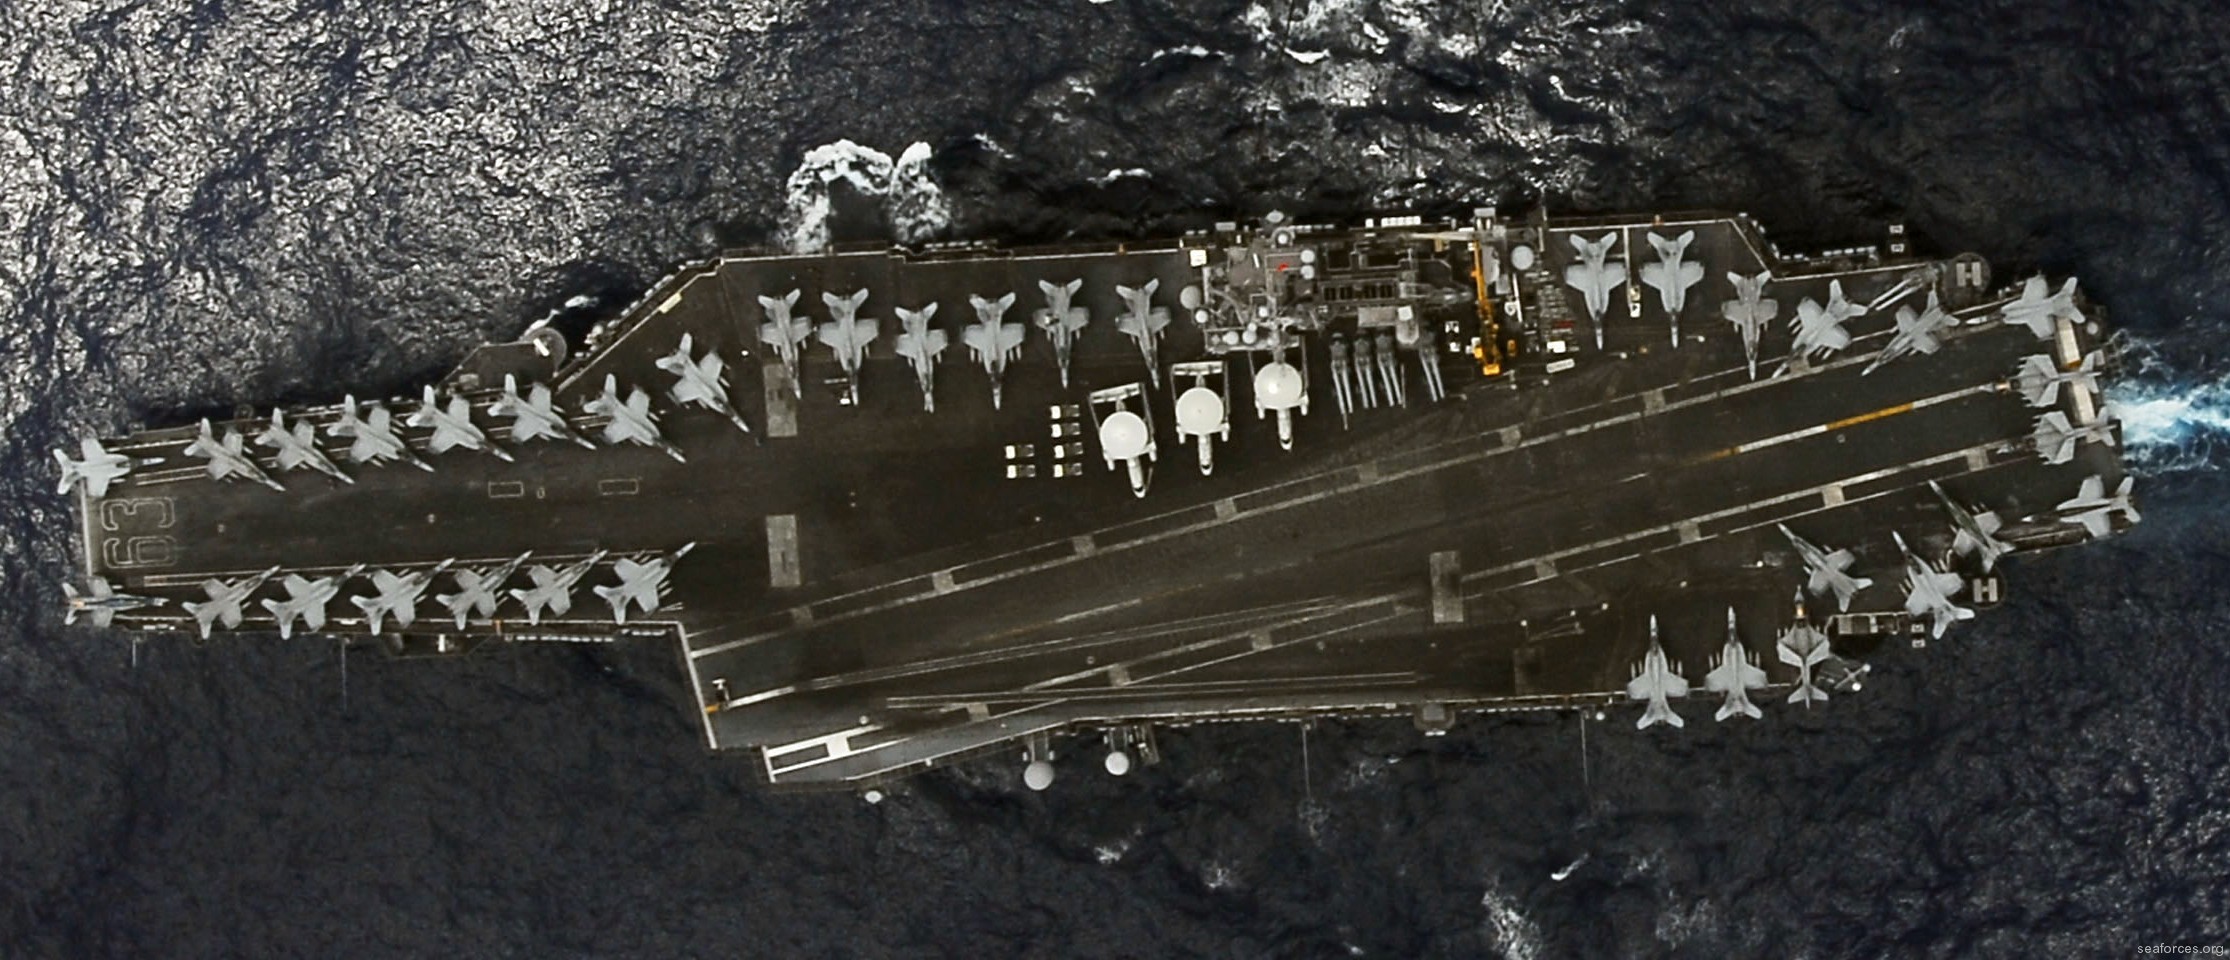 cv-63 uss kitty hawk aircraft carrier air wing cvw-5 us navy 41